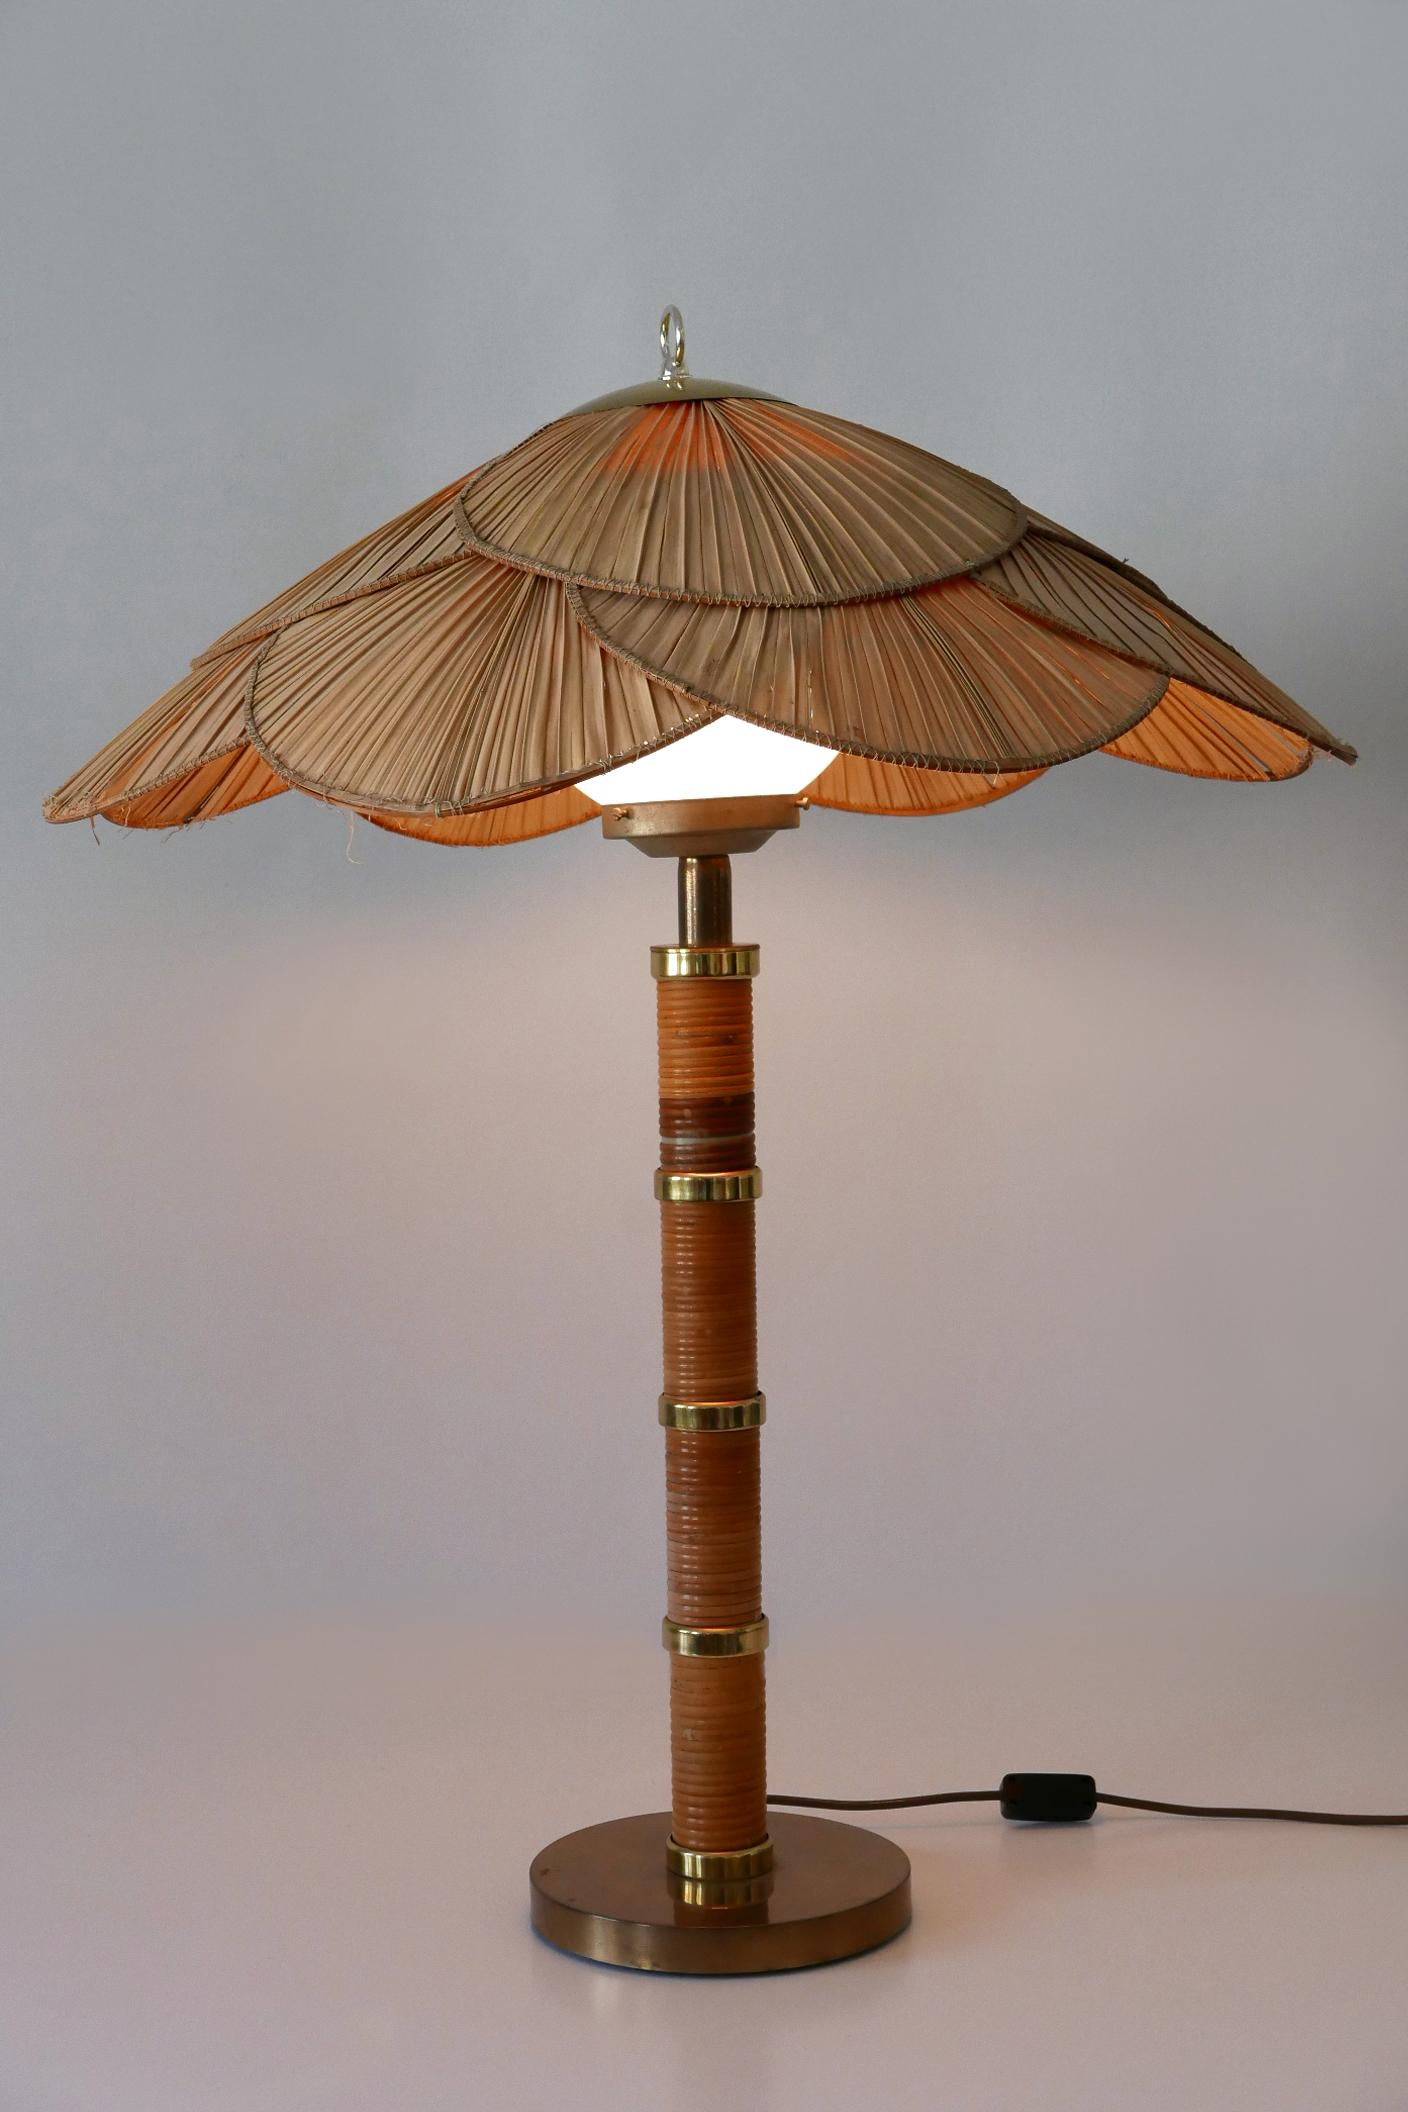 Große, äußerst seltene und sehr dekorative Mid-Century Modern 'Uchiwa' Tisch- oder Stehlampe. Entworfen & 3hergestellt von Miranda AB, Schweden, 1960er Jahre.

Die Tisch-/Stehlampe ist aus Messing, Opalglas, Weidengeflecht und Palmblättern gefertigt